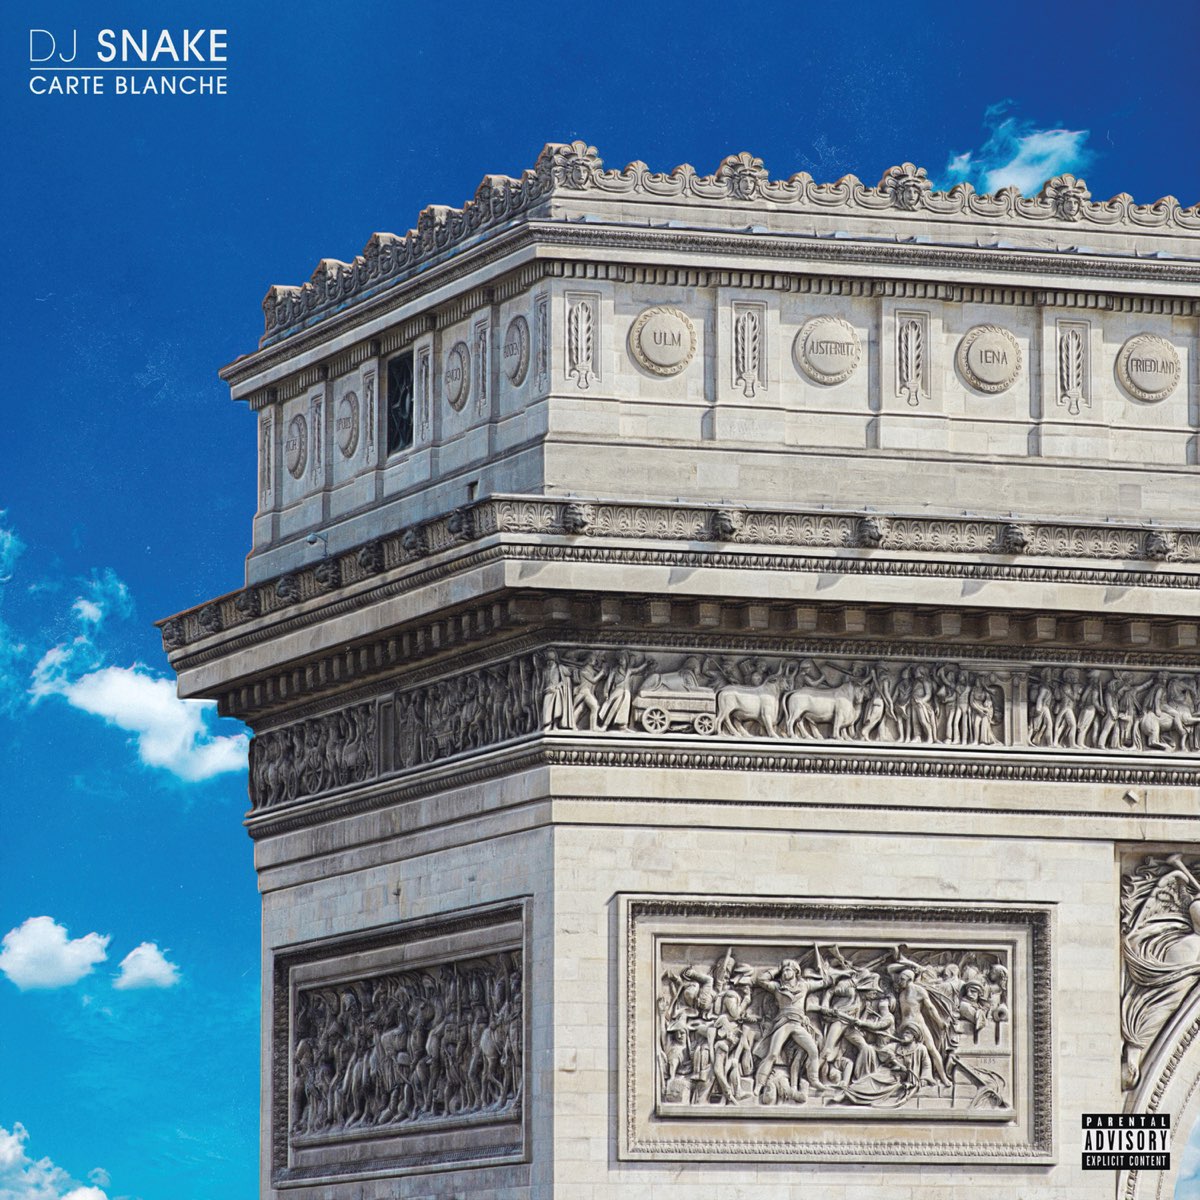 DJ Snake — Butterfly Effect cover artwork